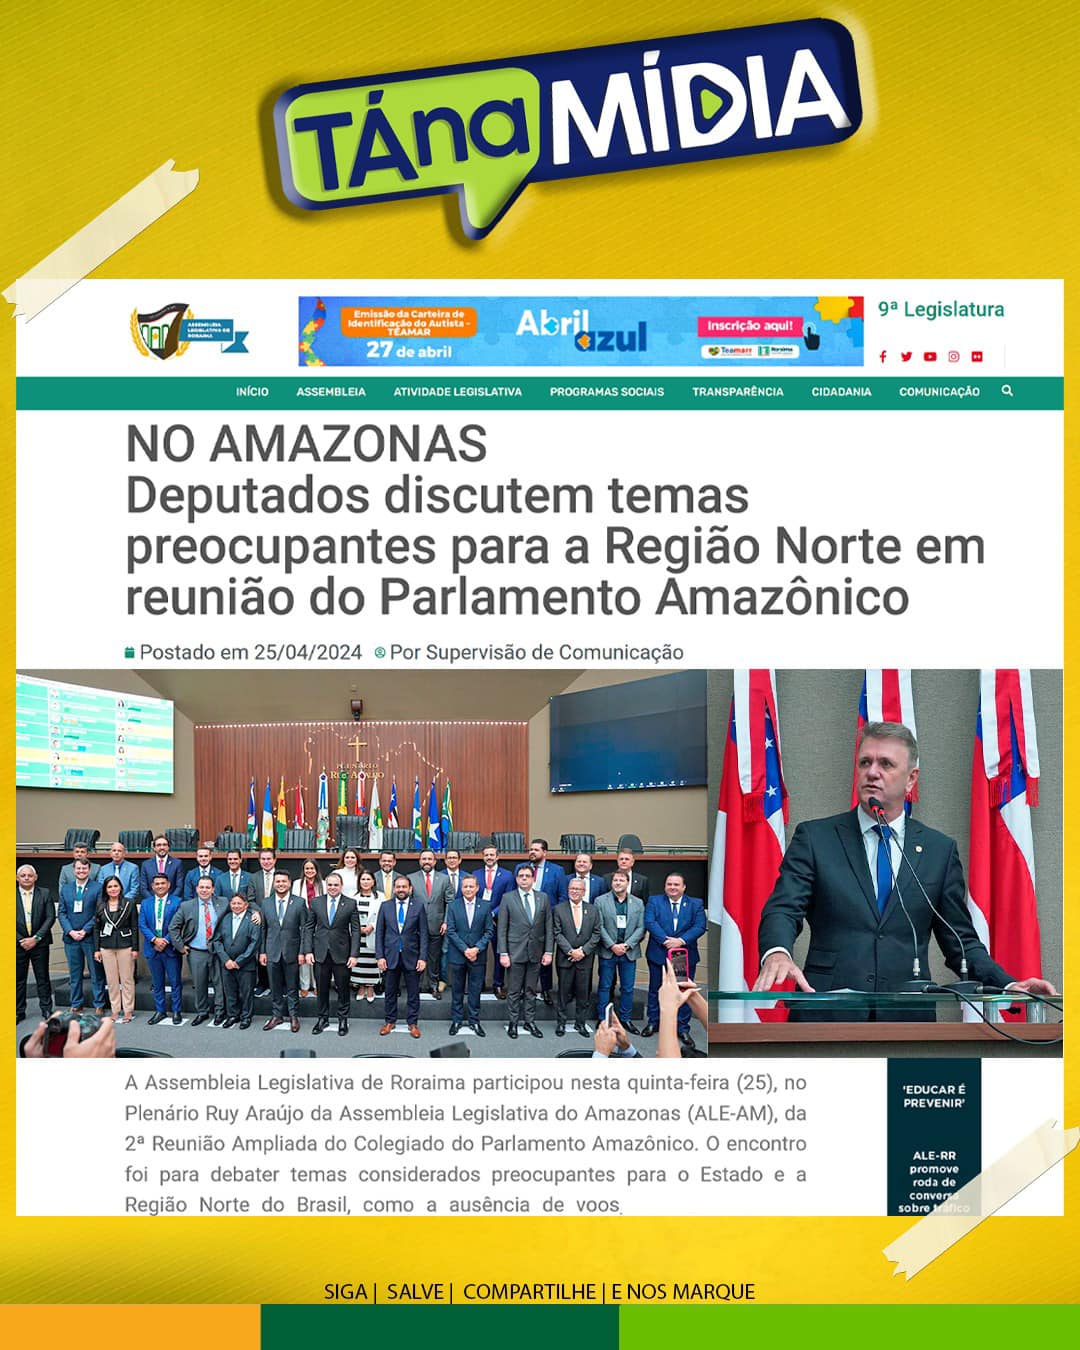 Deputado Luizinho participa de reunião do Parlamento Amazônico